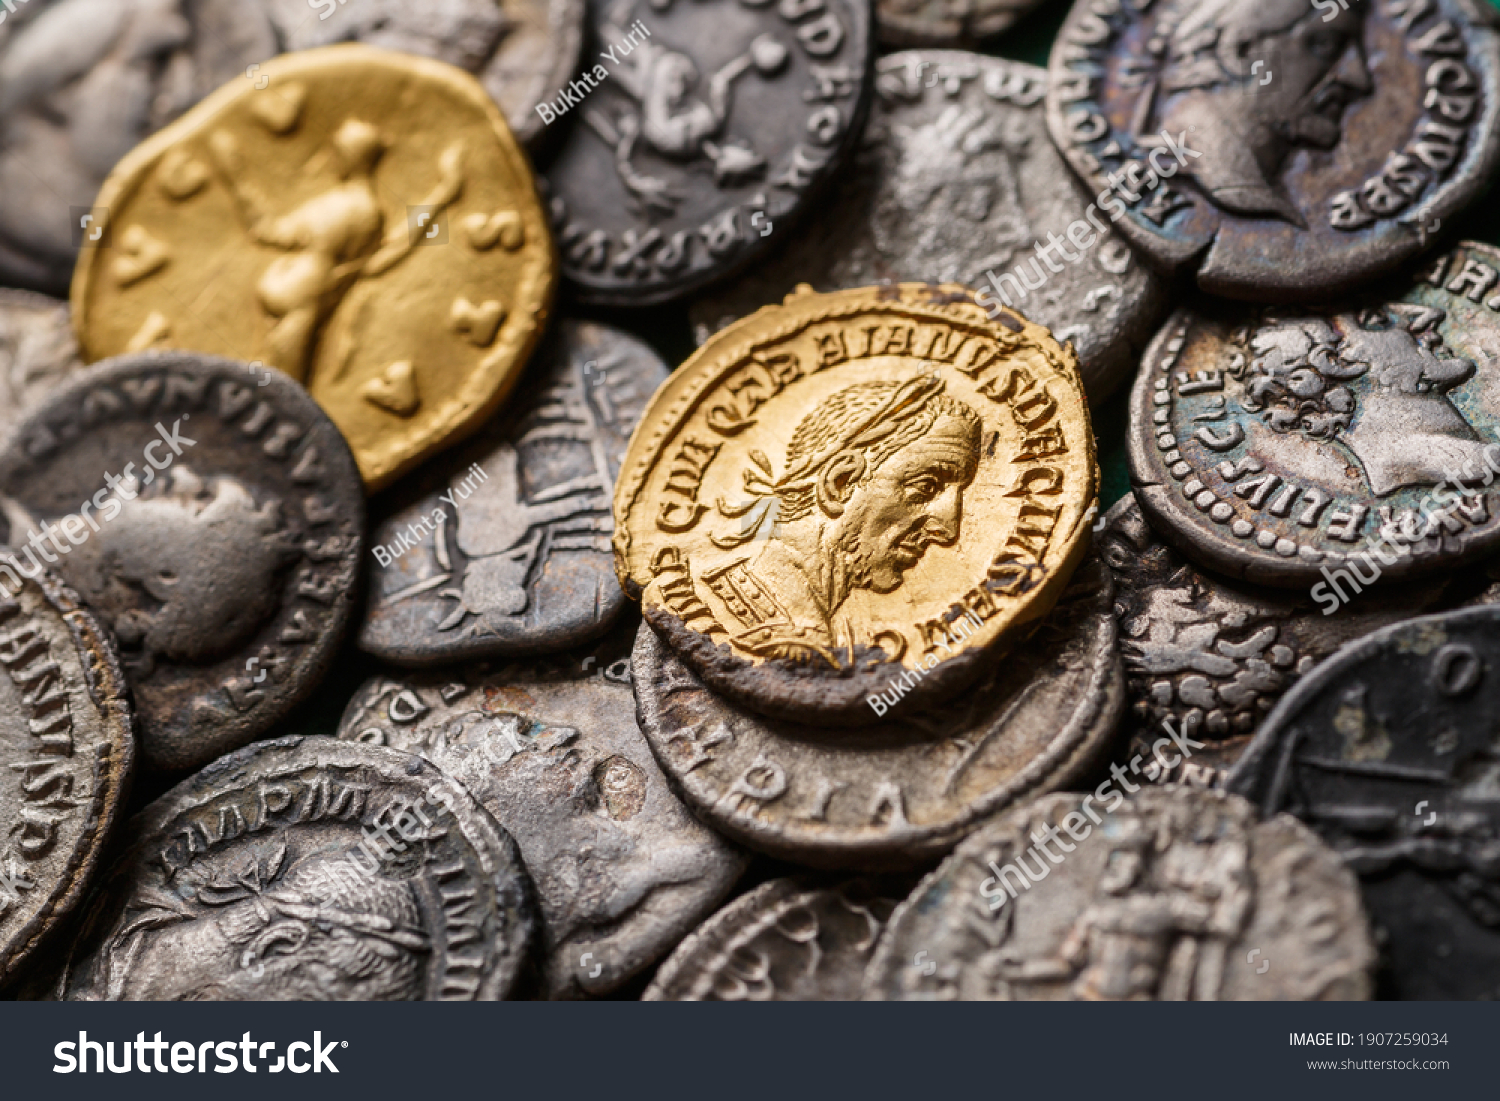 A treasure of Roman gold and silver coins.Trajan Decius. AD 249-251. AV Aureus.Ancient coin of the Roman Empire.Authentic  silver denarius, antoninianus,aureus of ancient Rome.Antikvariat. #1907259034